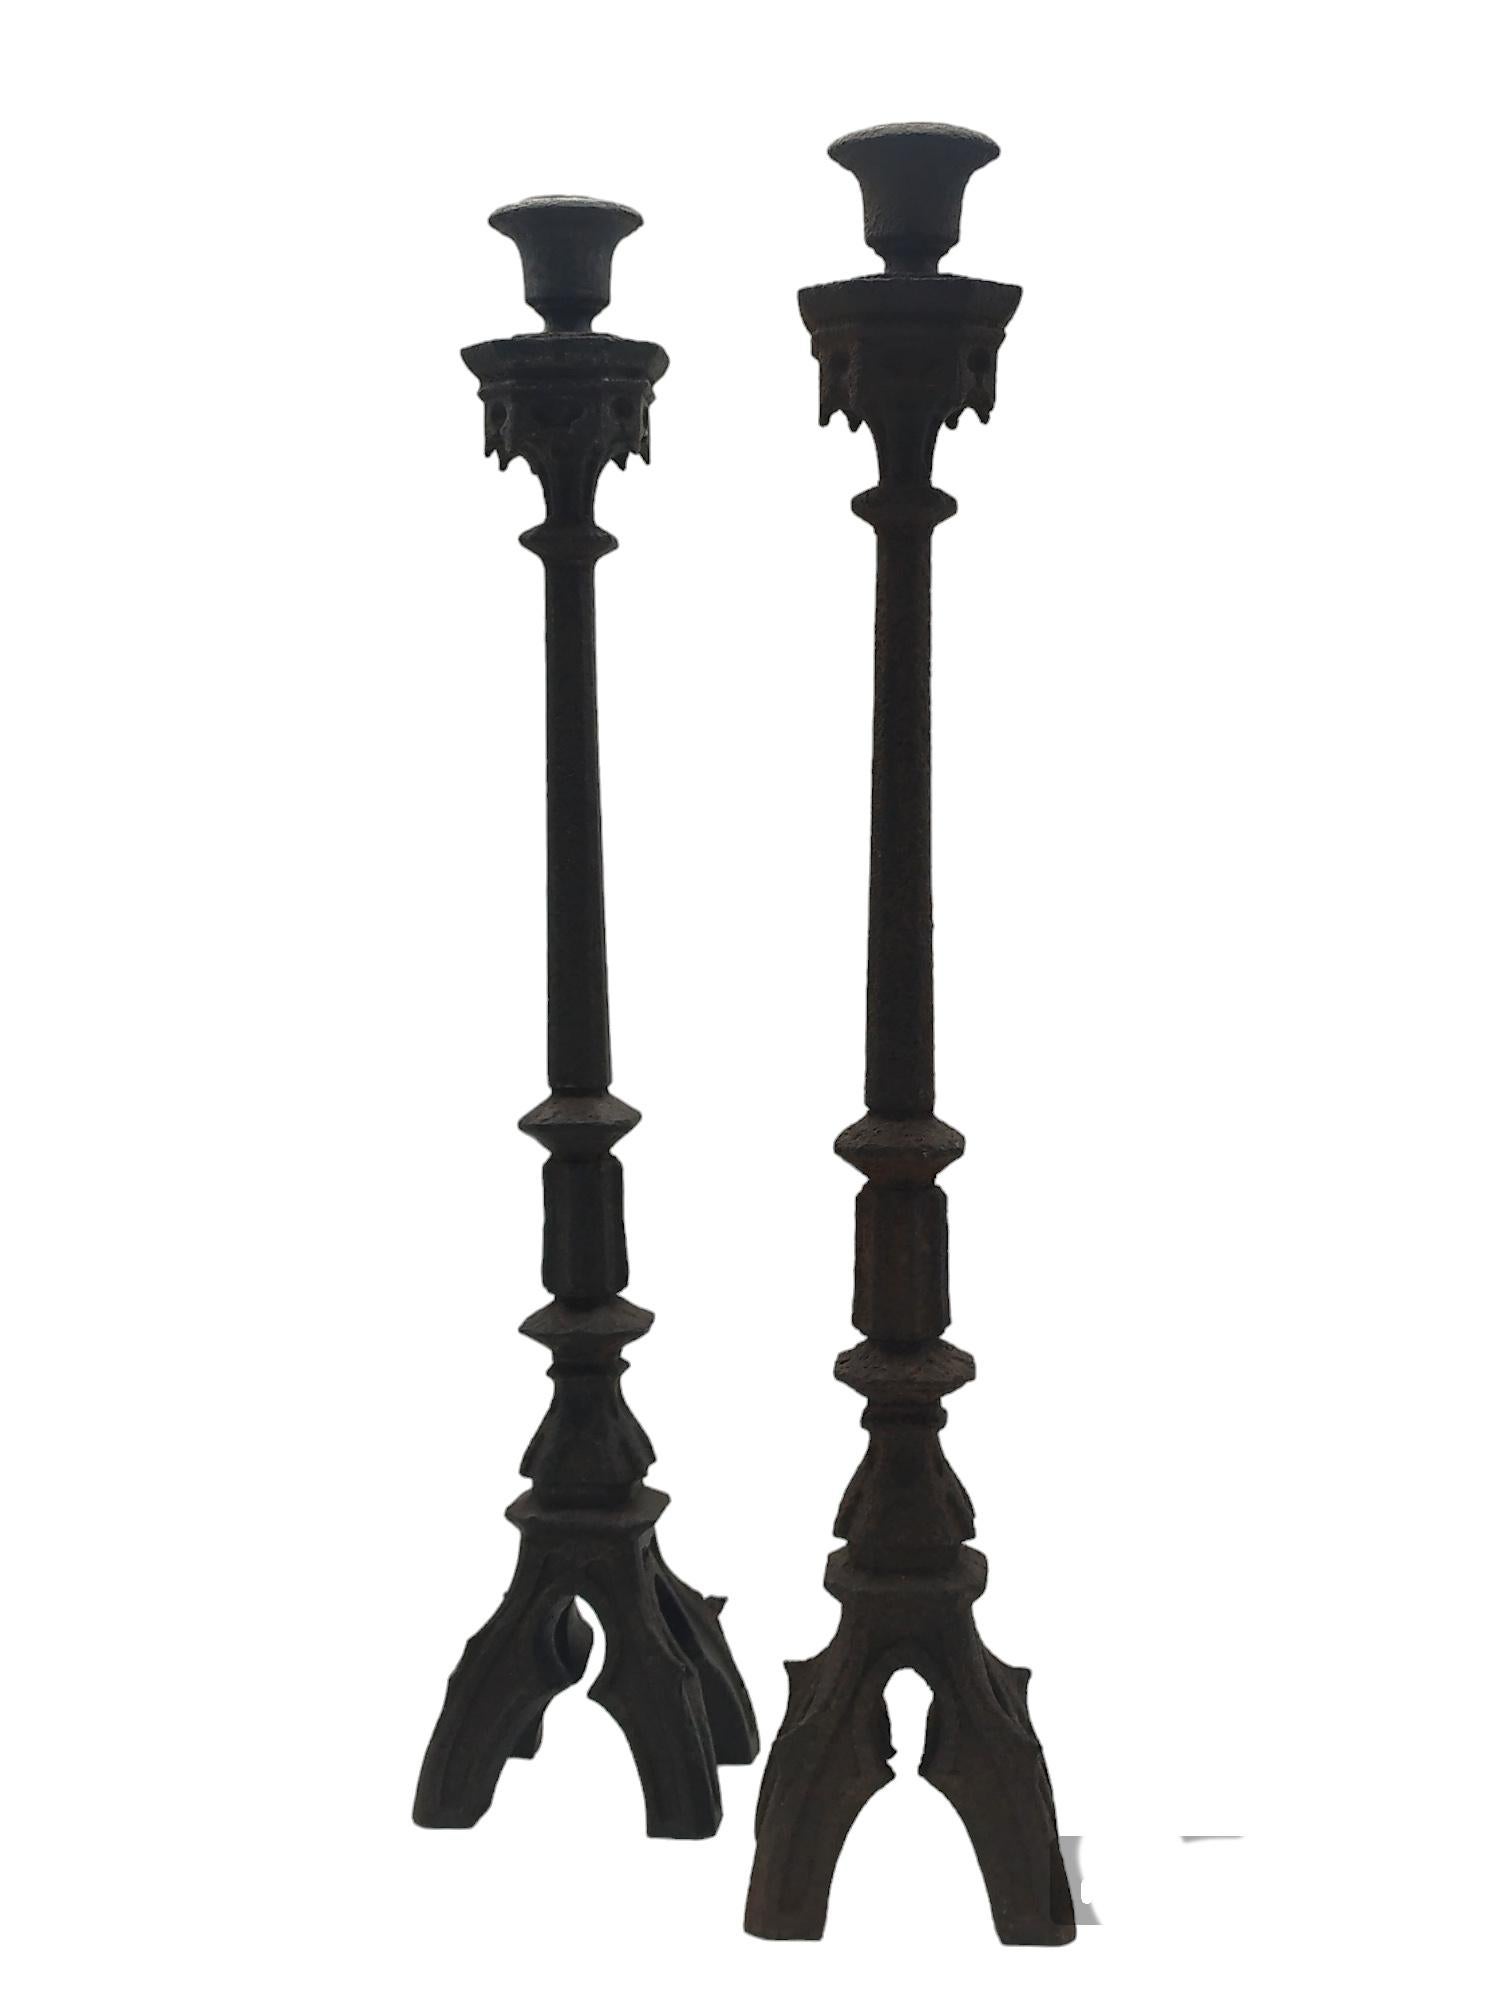 Ein Paar eiserne Kerzenhalter im italienischen neugotischen Stil mit vierfüßigen Metallsockeln. Guter Gesamtzustand, mit hervorragender Patina, alters- und gebrauchsgemäße Abnutzung.